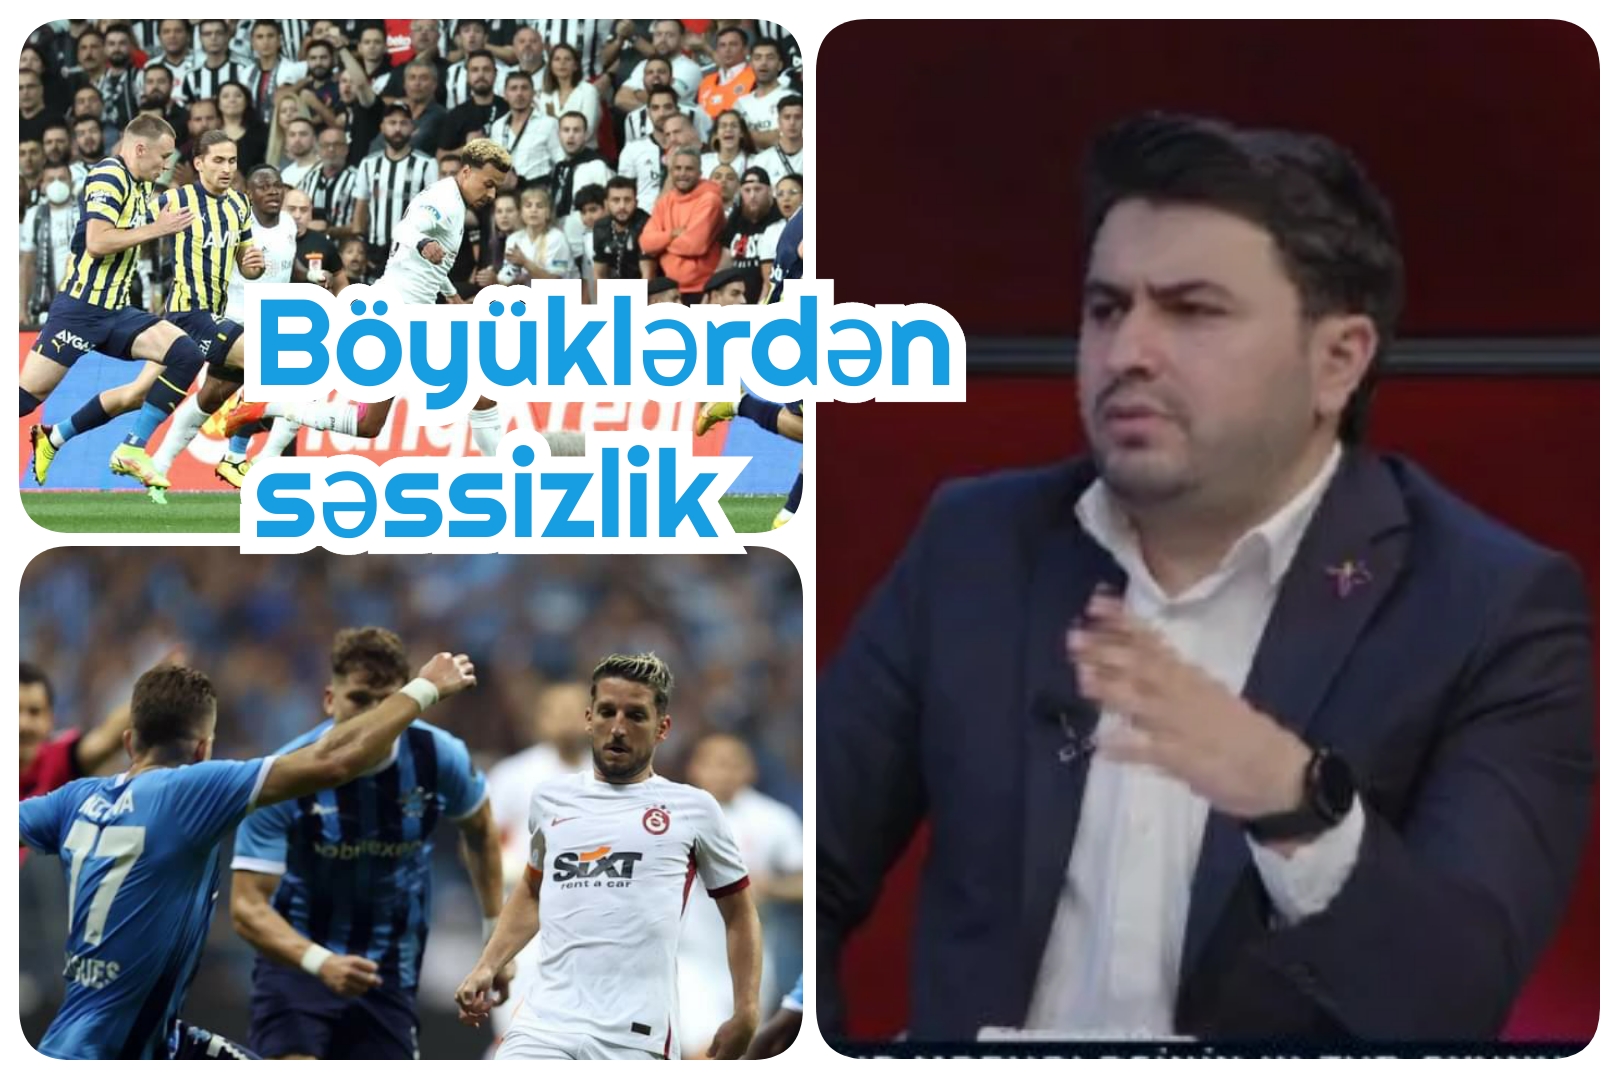 Azərbaycanlı teleşərhçi “Beşiktaş”, "Fənərbağça" və “Qalatasaray”a xəbərdarlıq etdi - VİDEO